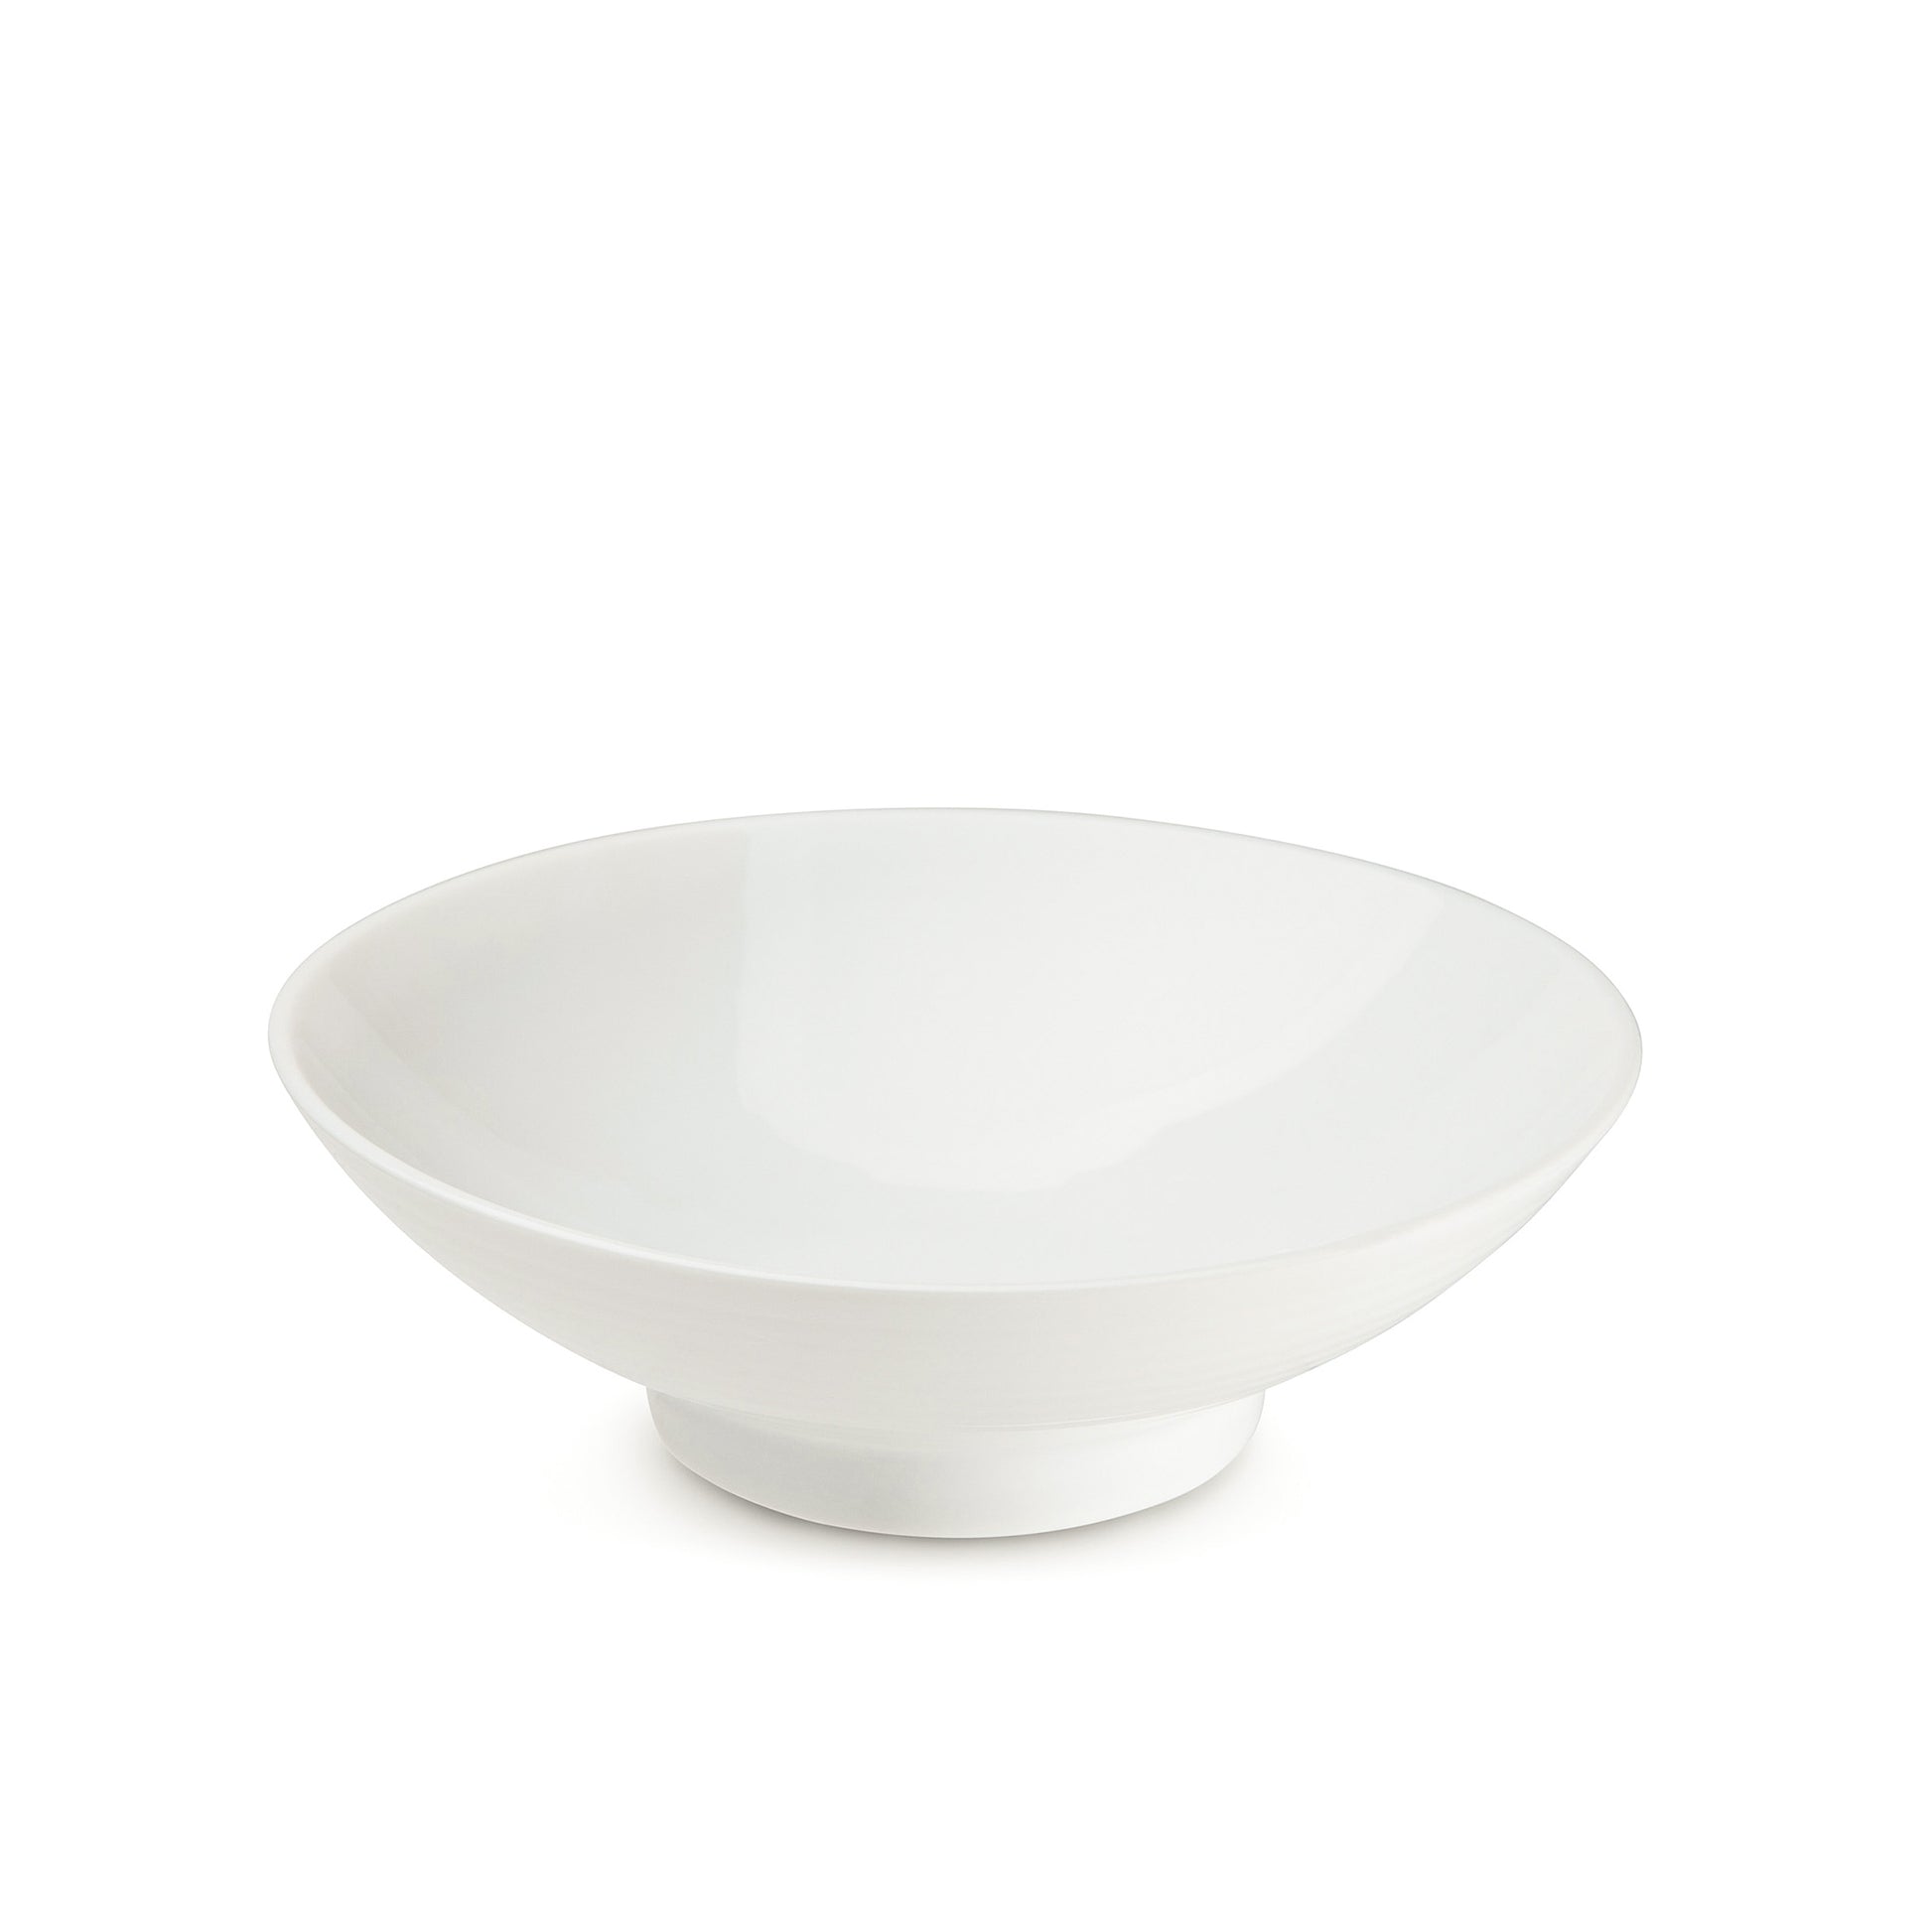 7" white porcelain bowl, 45 degree view, media 3 of 4